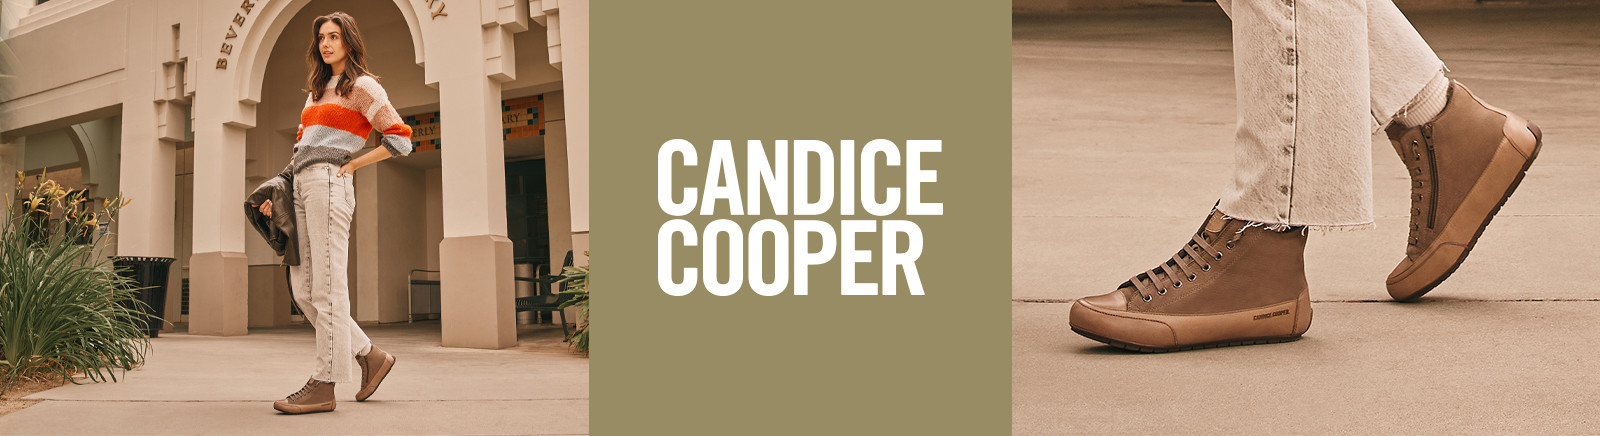 Prange: Candice Cooper Boots für Damen online kaufen online shoppen